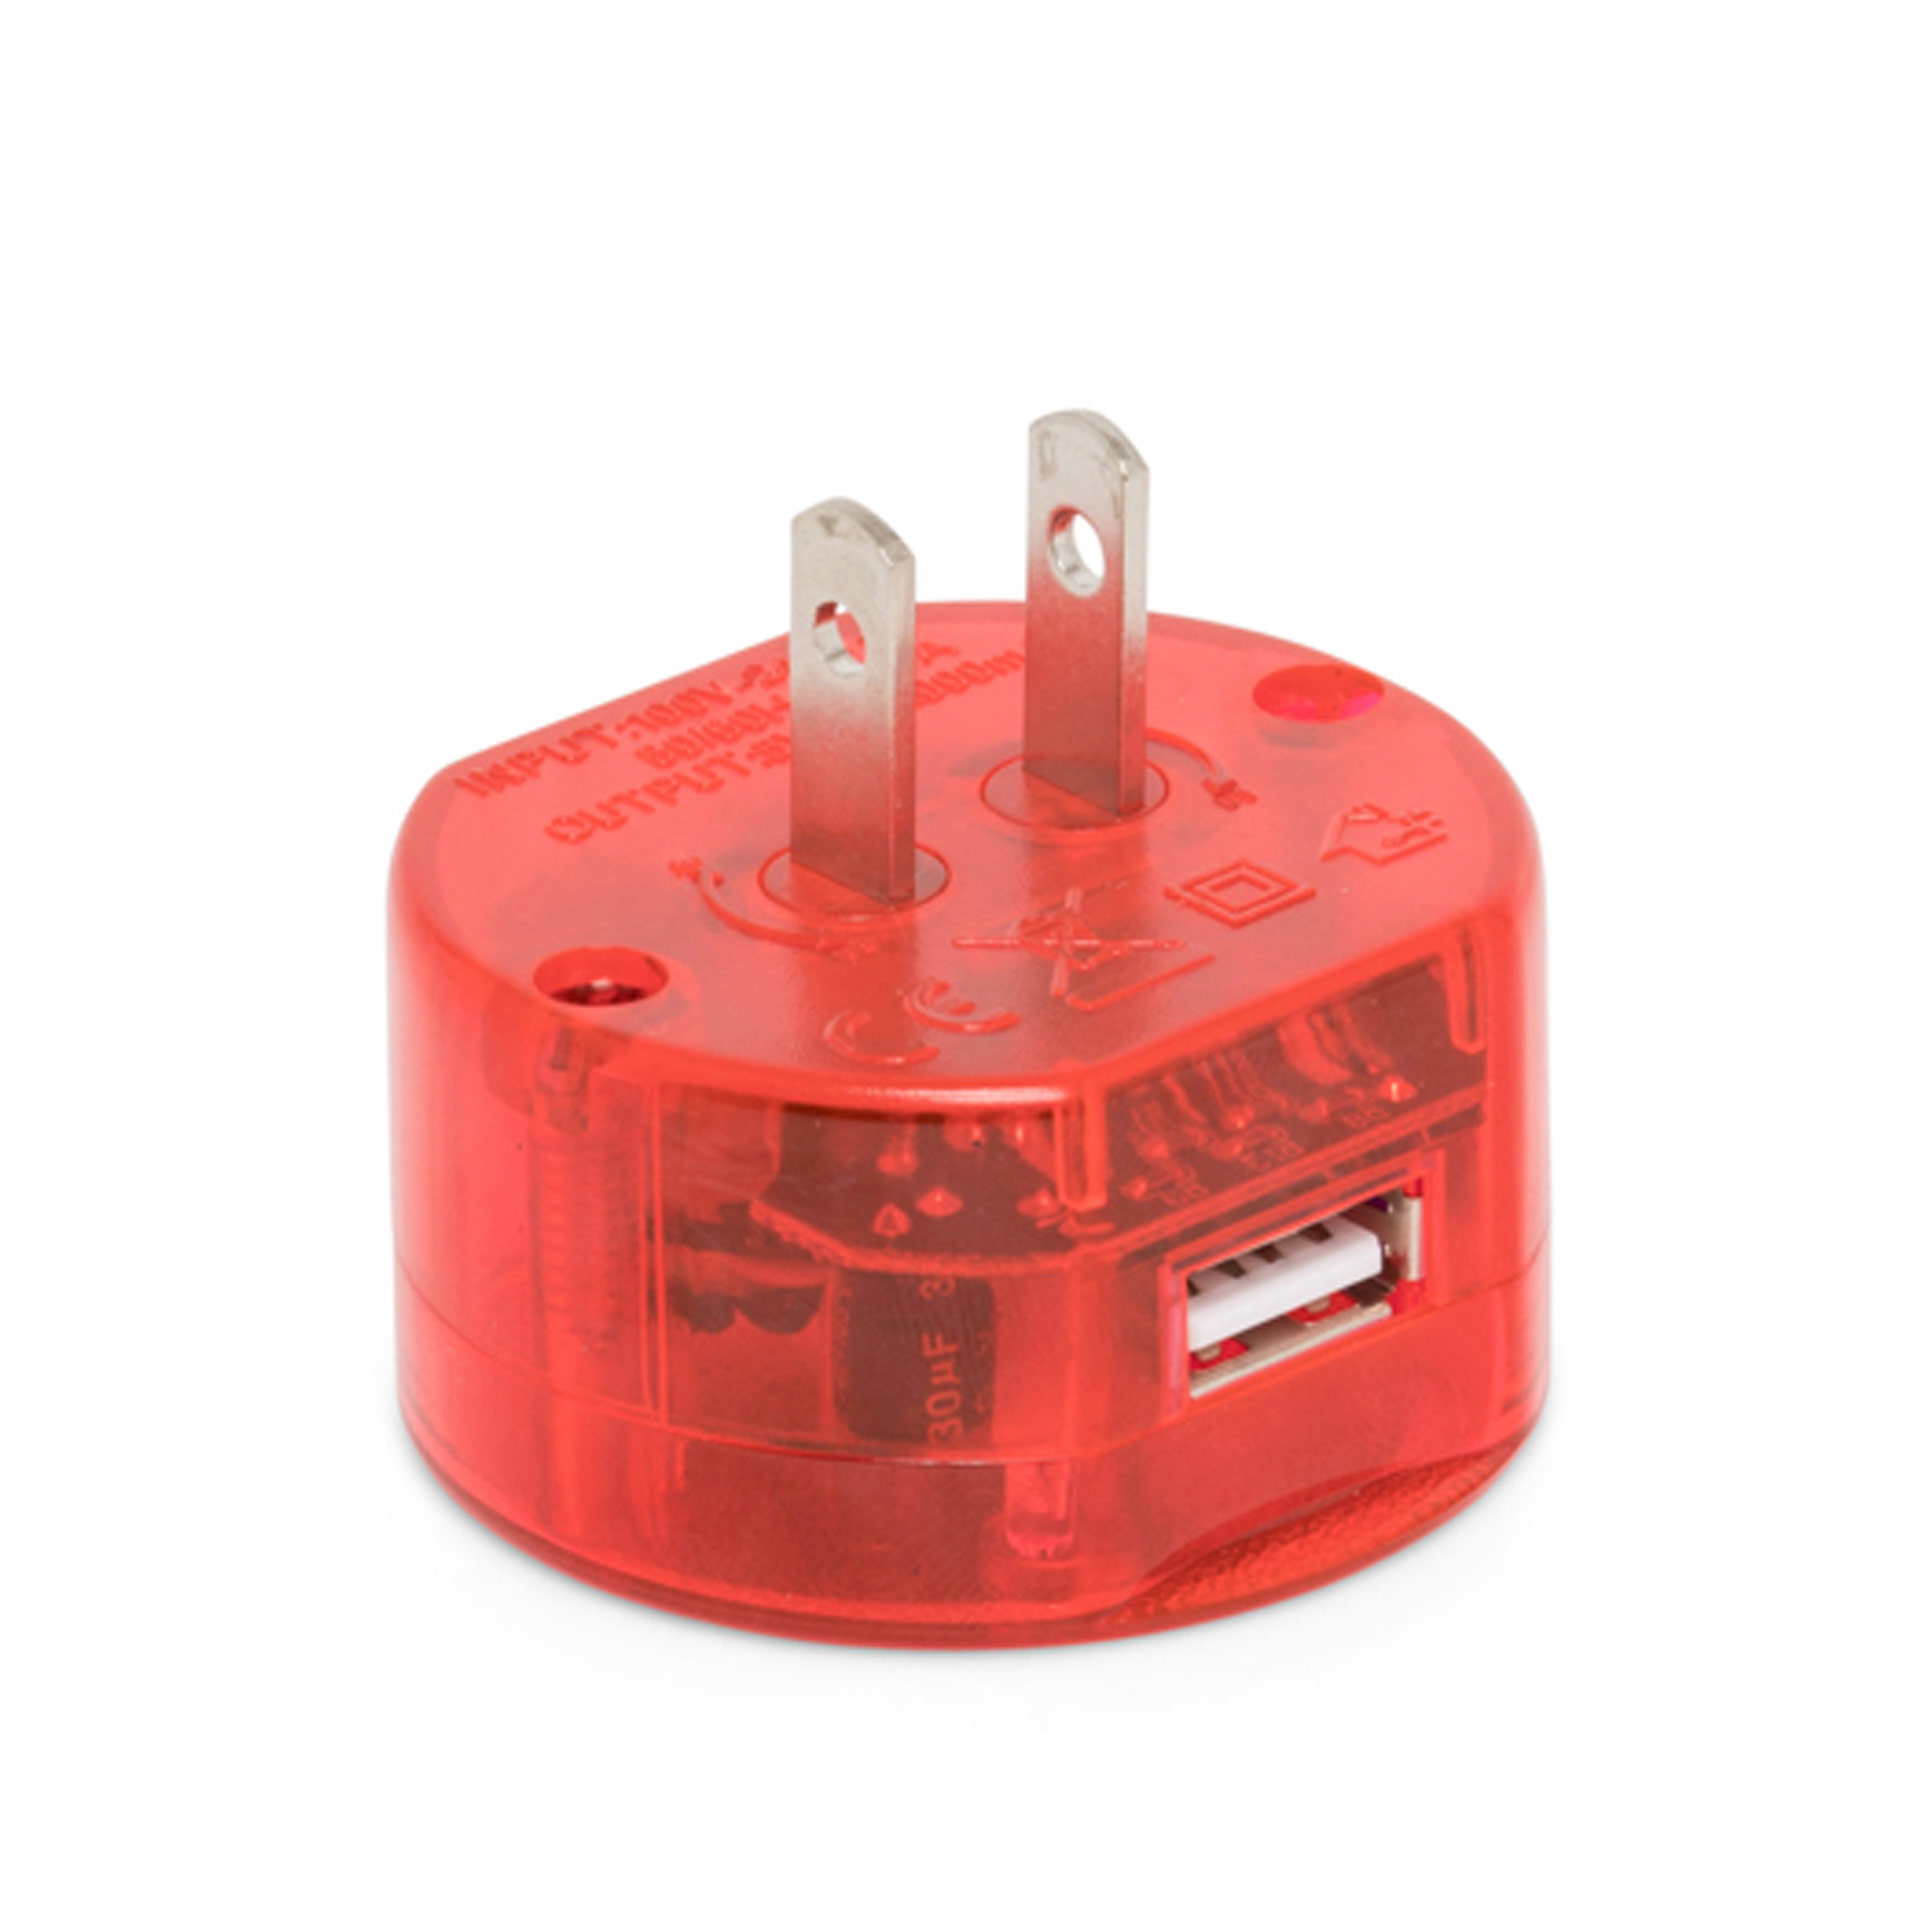 Adattatore universale da viaggio con presa USB Rosso, rosso, large